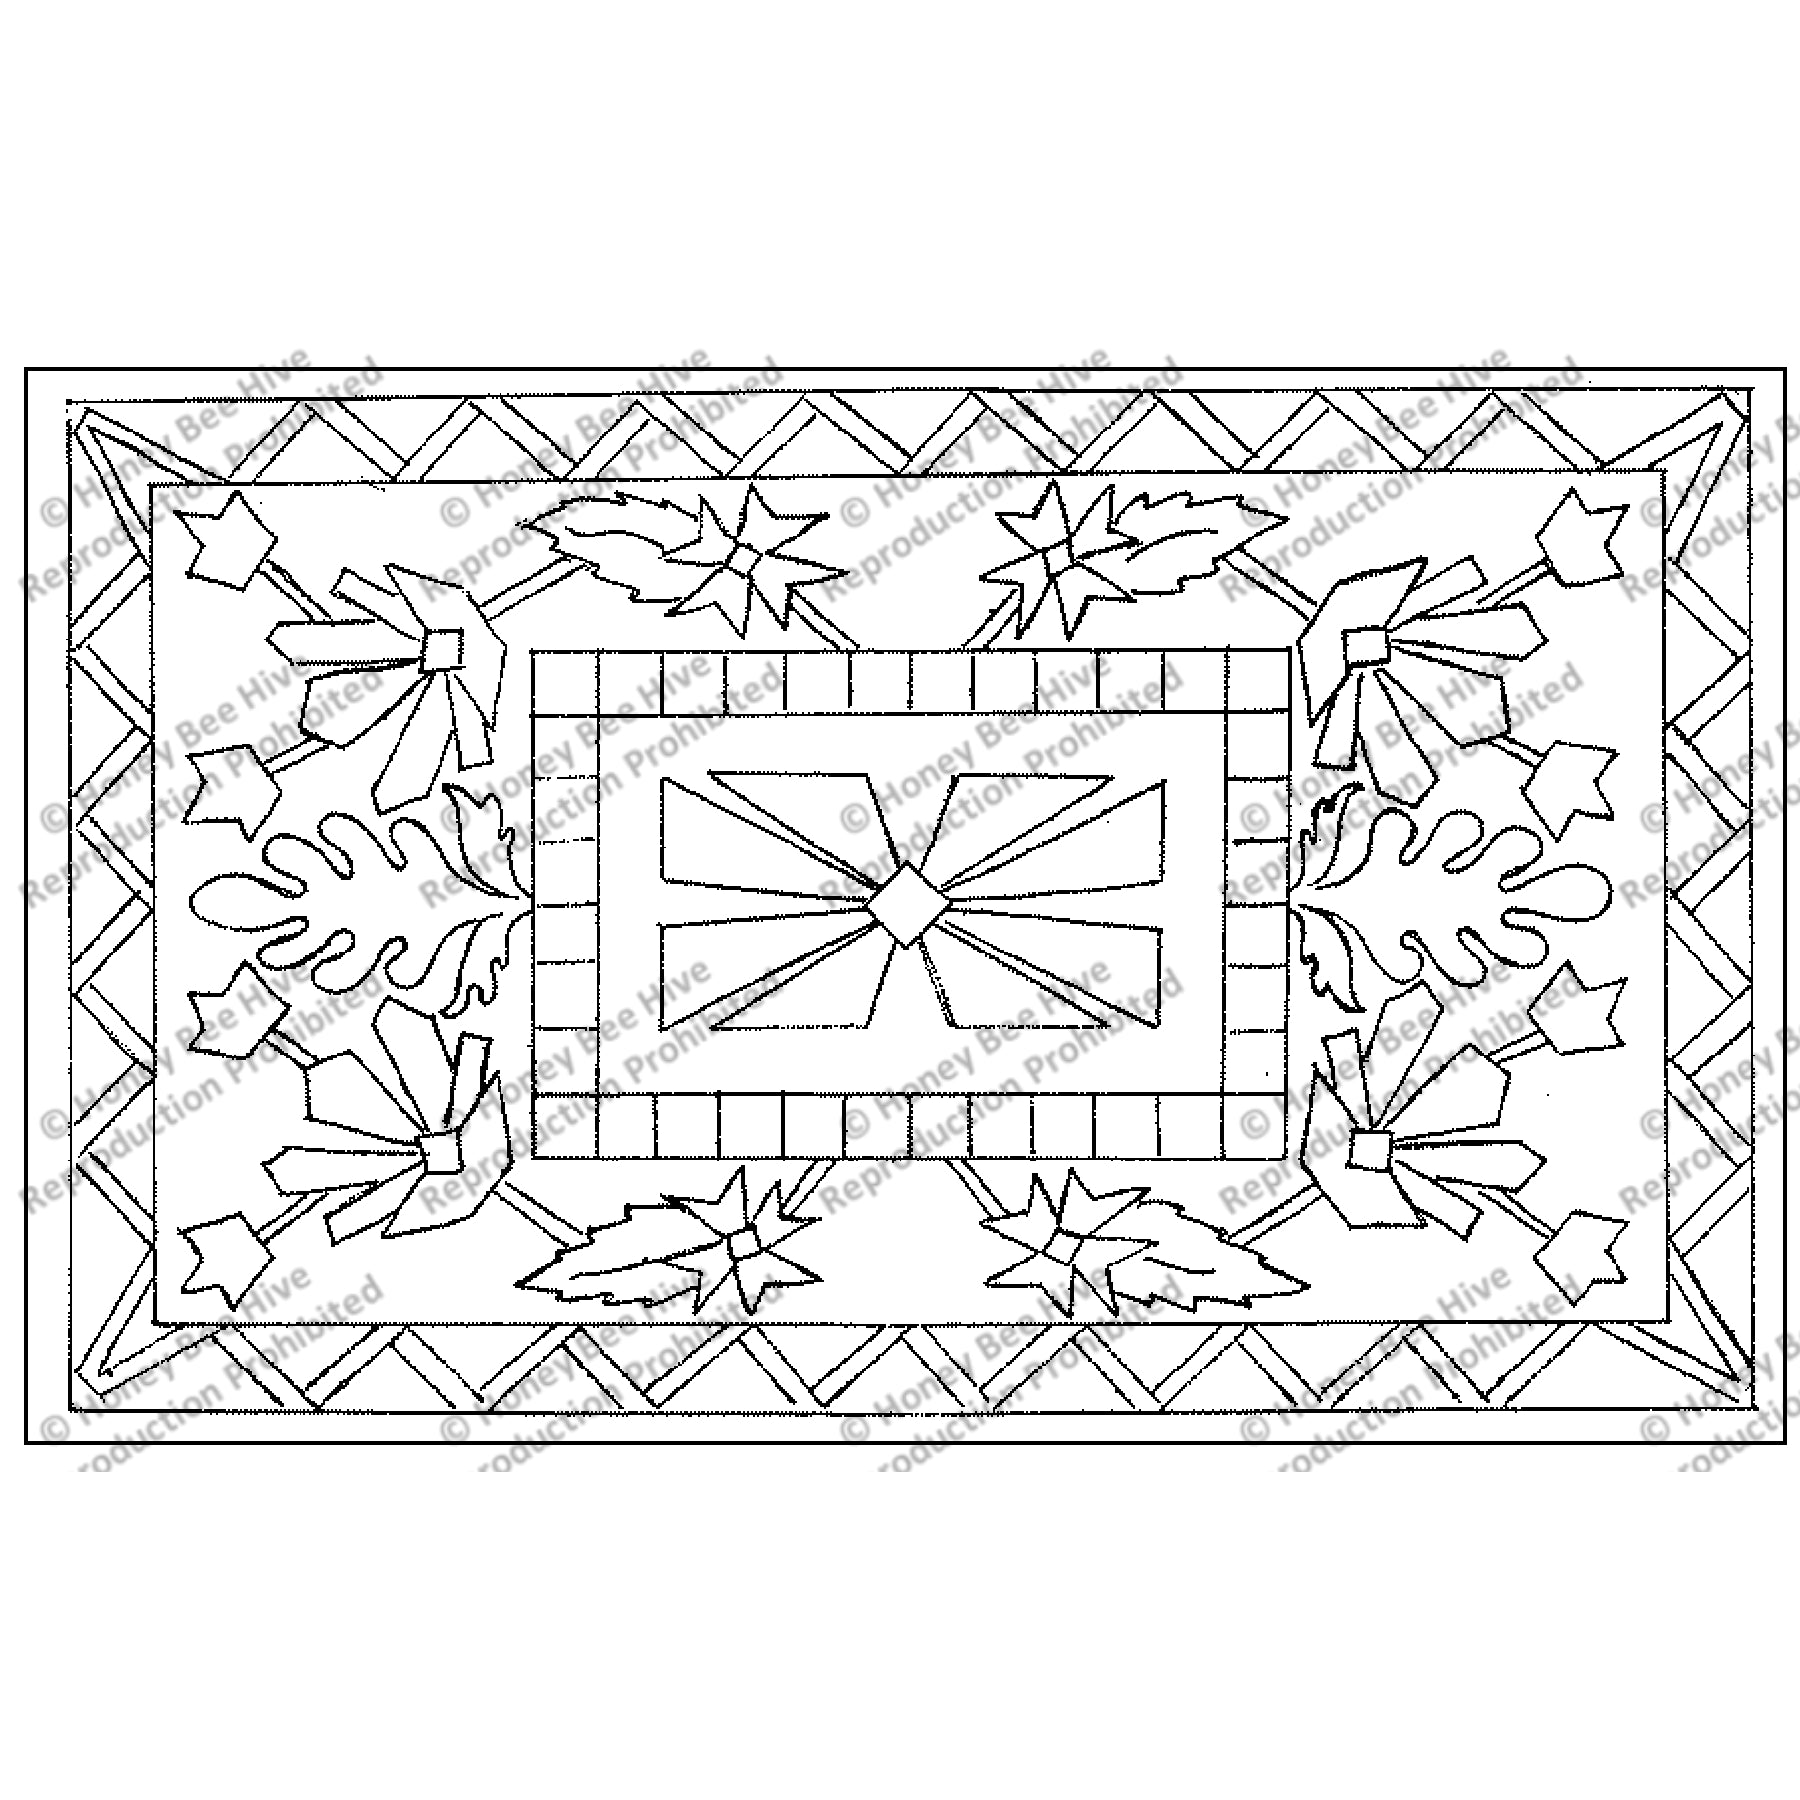 Beshir, rug hooking pattern